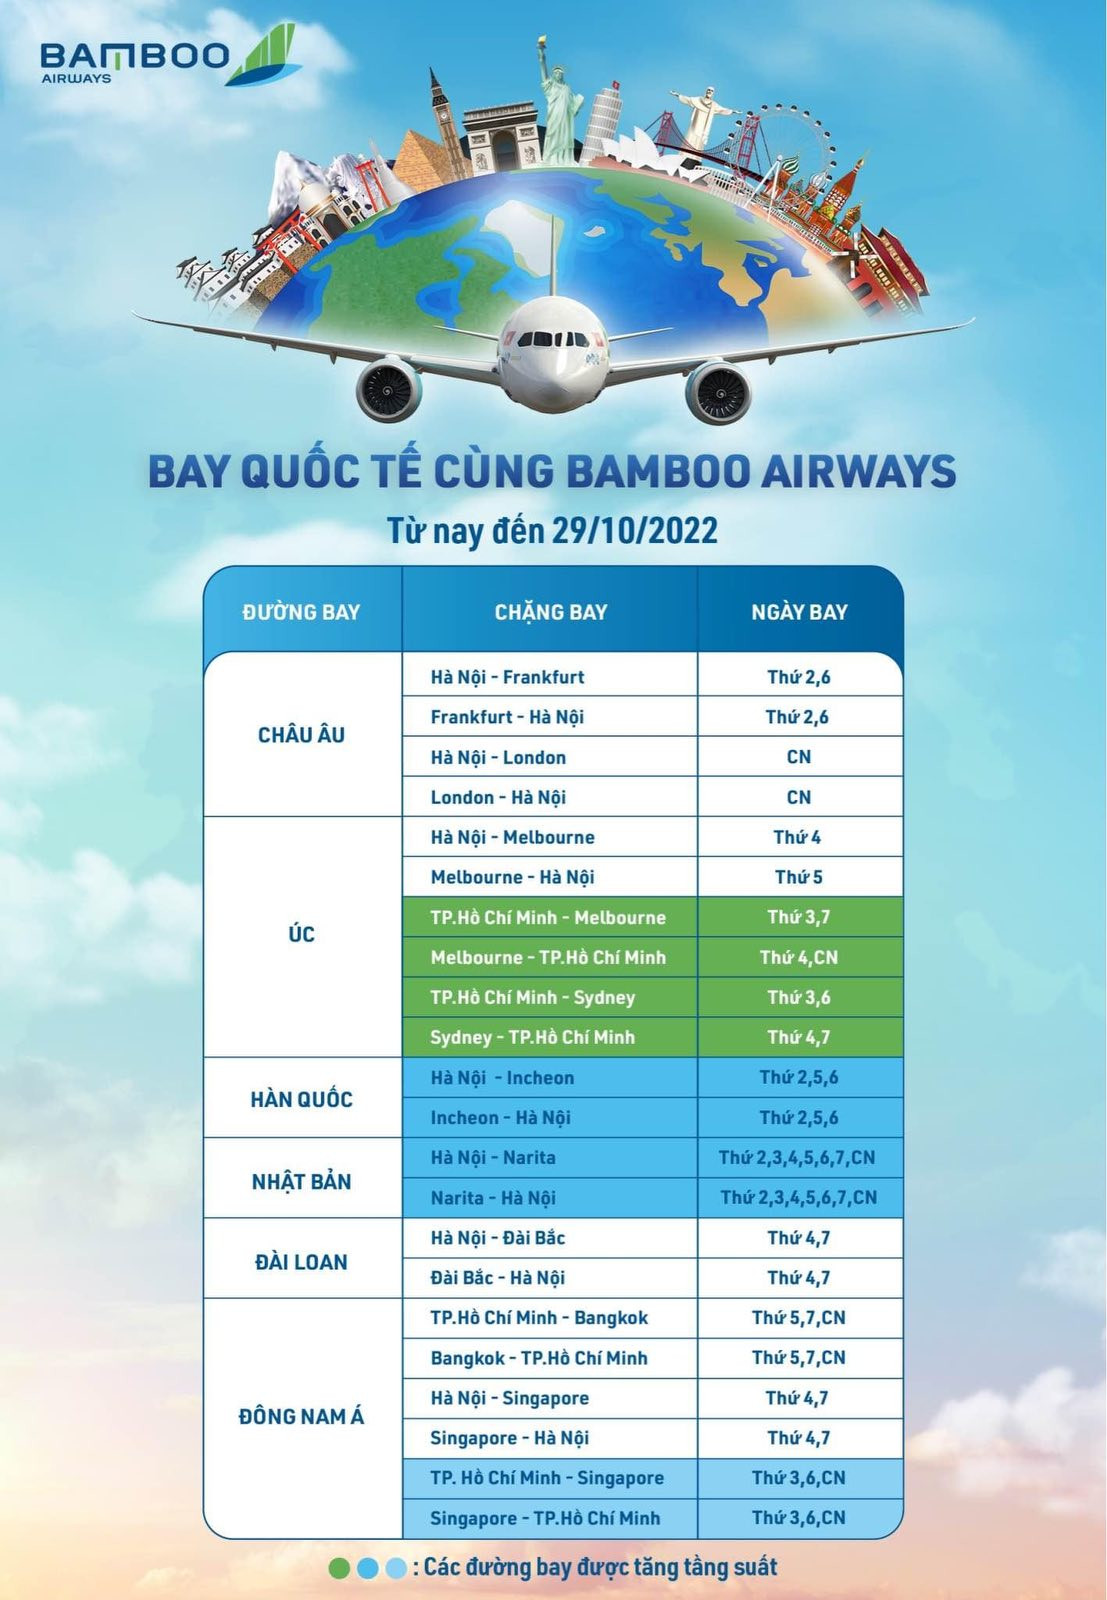 Lịch bay quốc tế từ nay đến 29/10/2022 của Bamboo Airways.